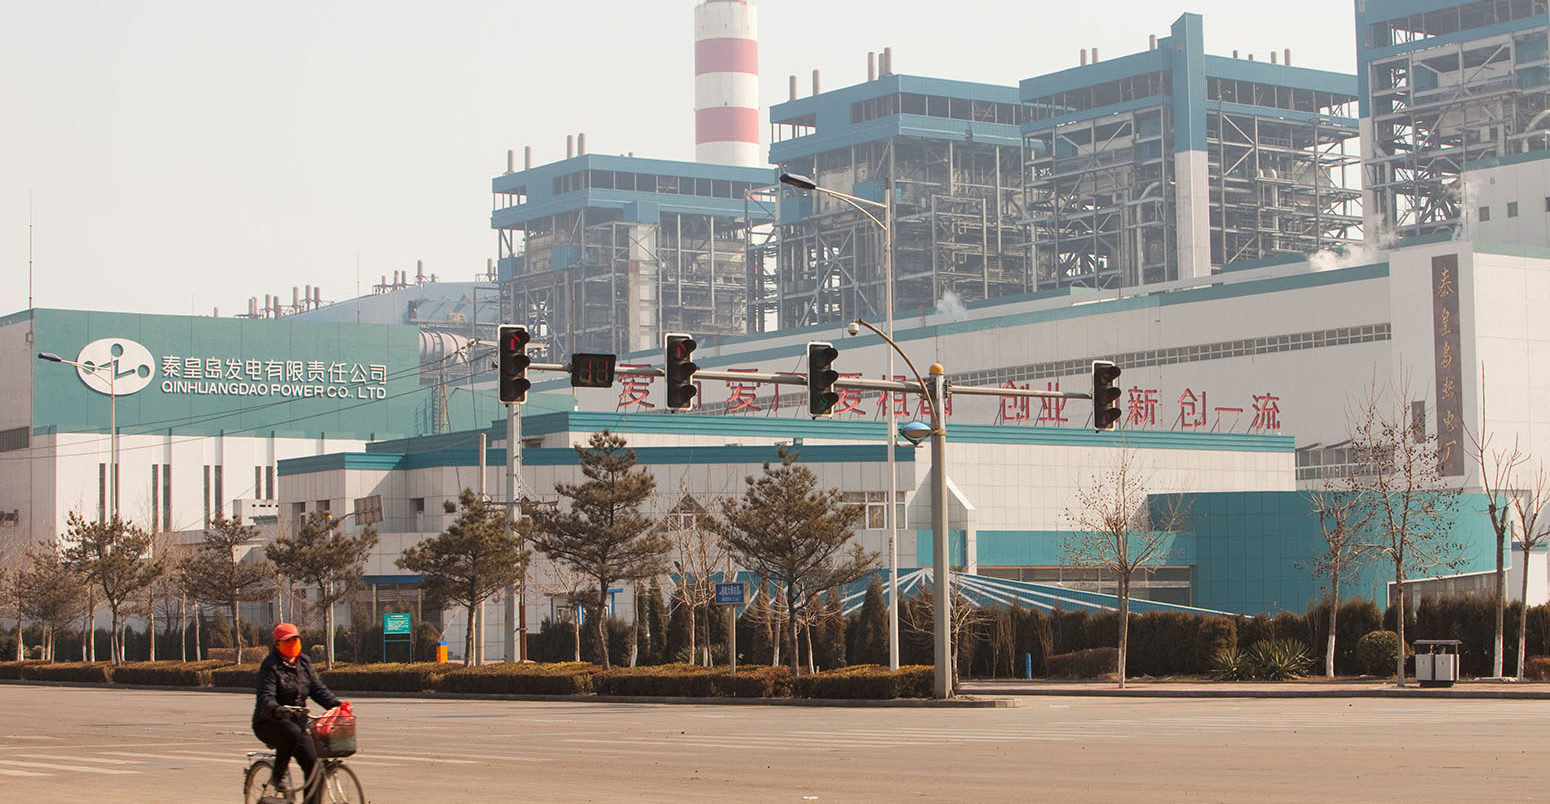 中国北方的新型煤炭发电厂。信用：全球变暖图片/ alamy库存照片Ba5894